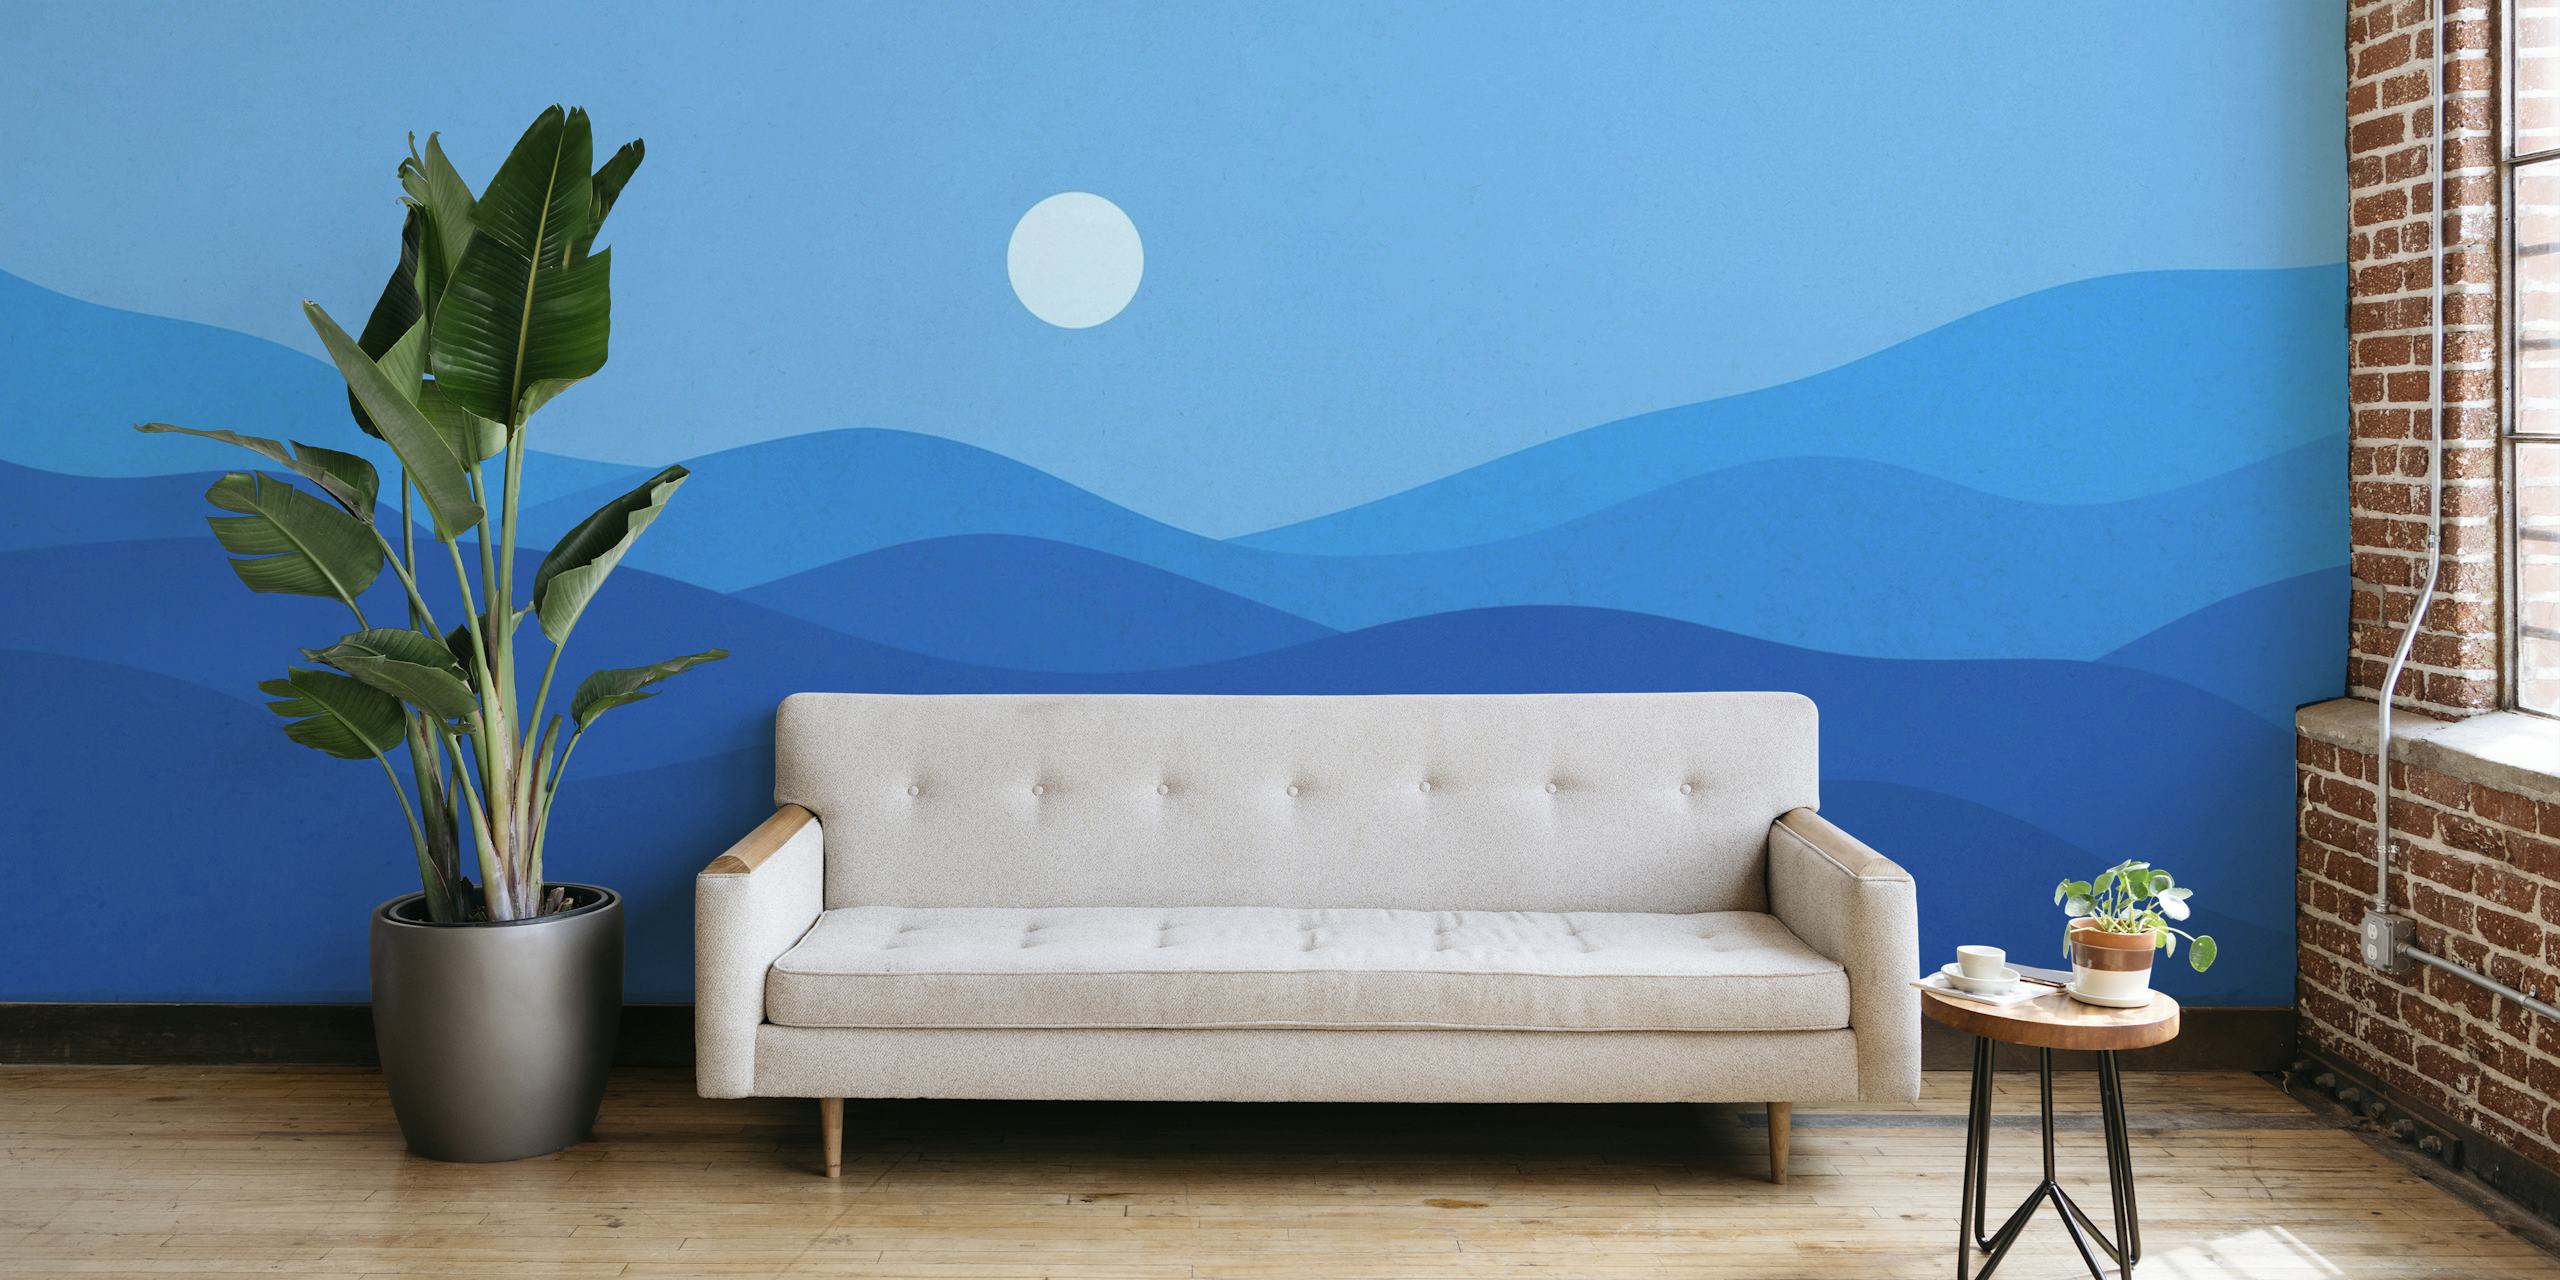 Mirni plavi pejzaž u akvarelu s valovitim brežuljcima i zidnom muralom obasjanom mjesečinom